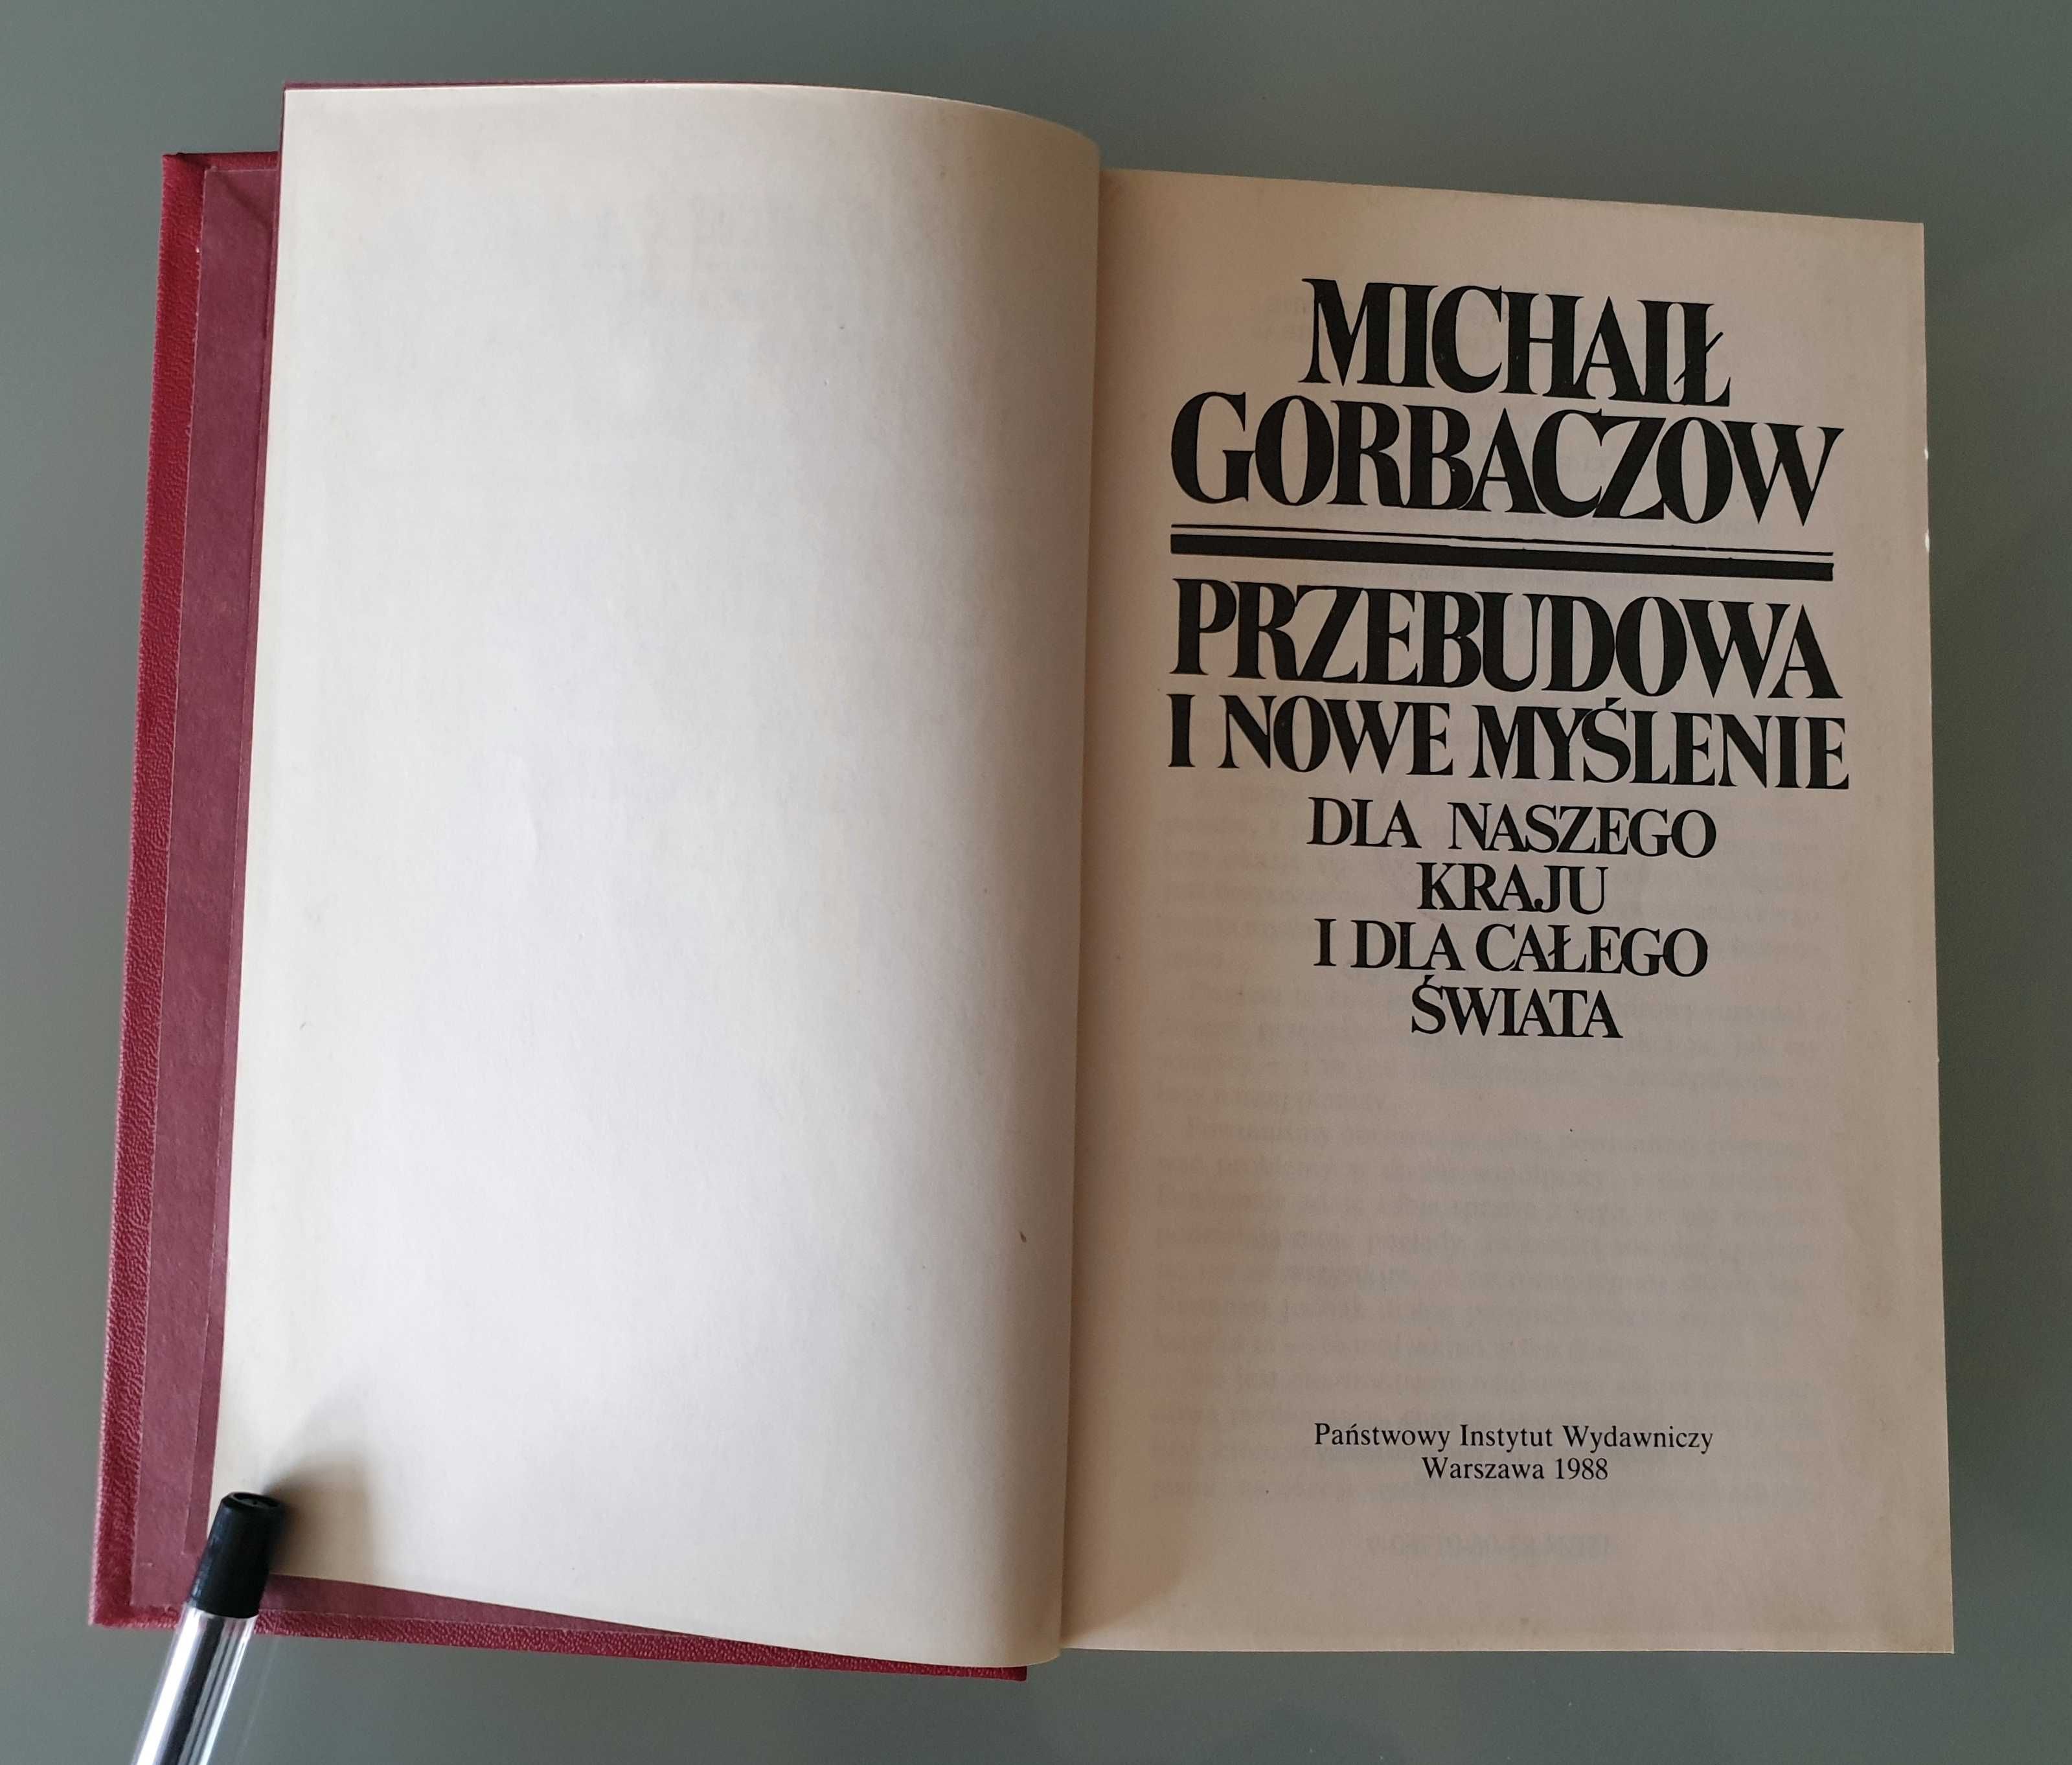 Michaił Gorbaczow - Przebudowa i nowe myślenie